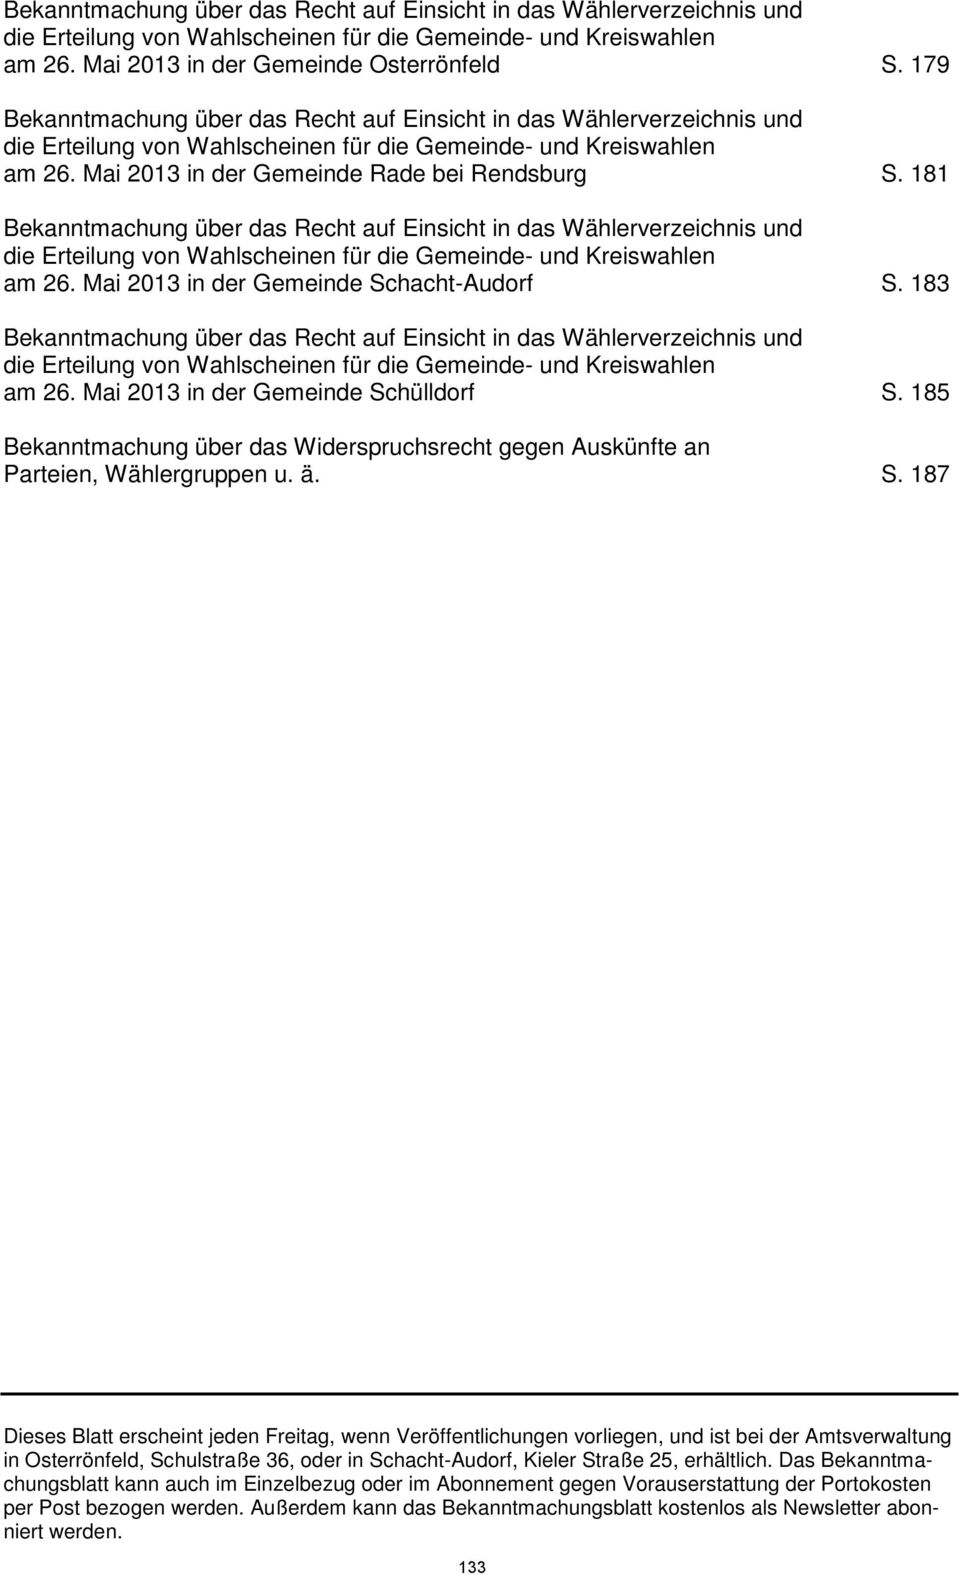 181 Bekanntmachung über das Recht auf Einsicht in das Wählerverzeichnis und die Erteilung von Wahlscheinen für die Gemeinde- und Kreiswahlen am 26. Mai 2013 in der Gemeinde Schacht-Audorf S.